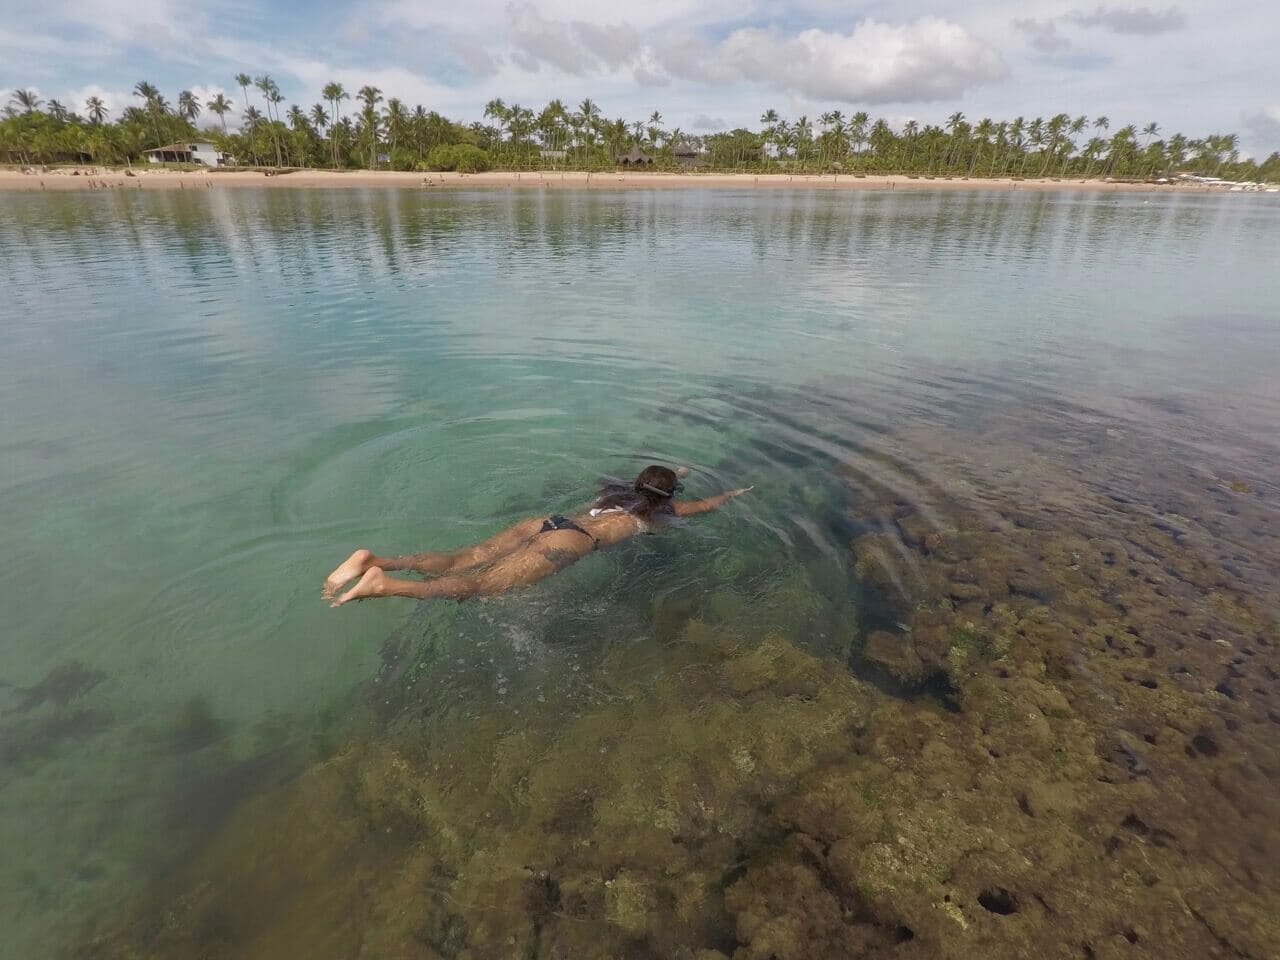 Uma mulher nadando nas piscinas naturais da praia de Taipu de Fora, Península de Maraú, Bahia, com vários coqueiros ao fundo